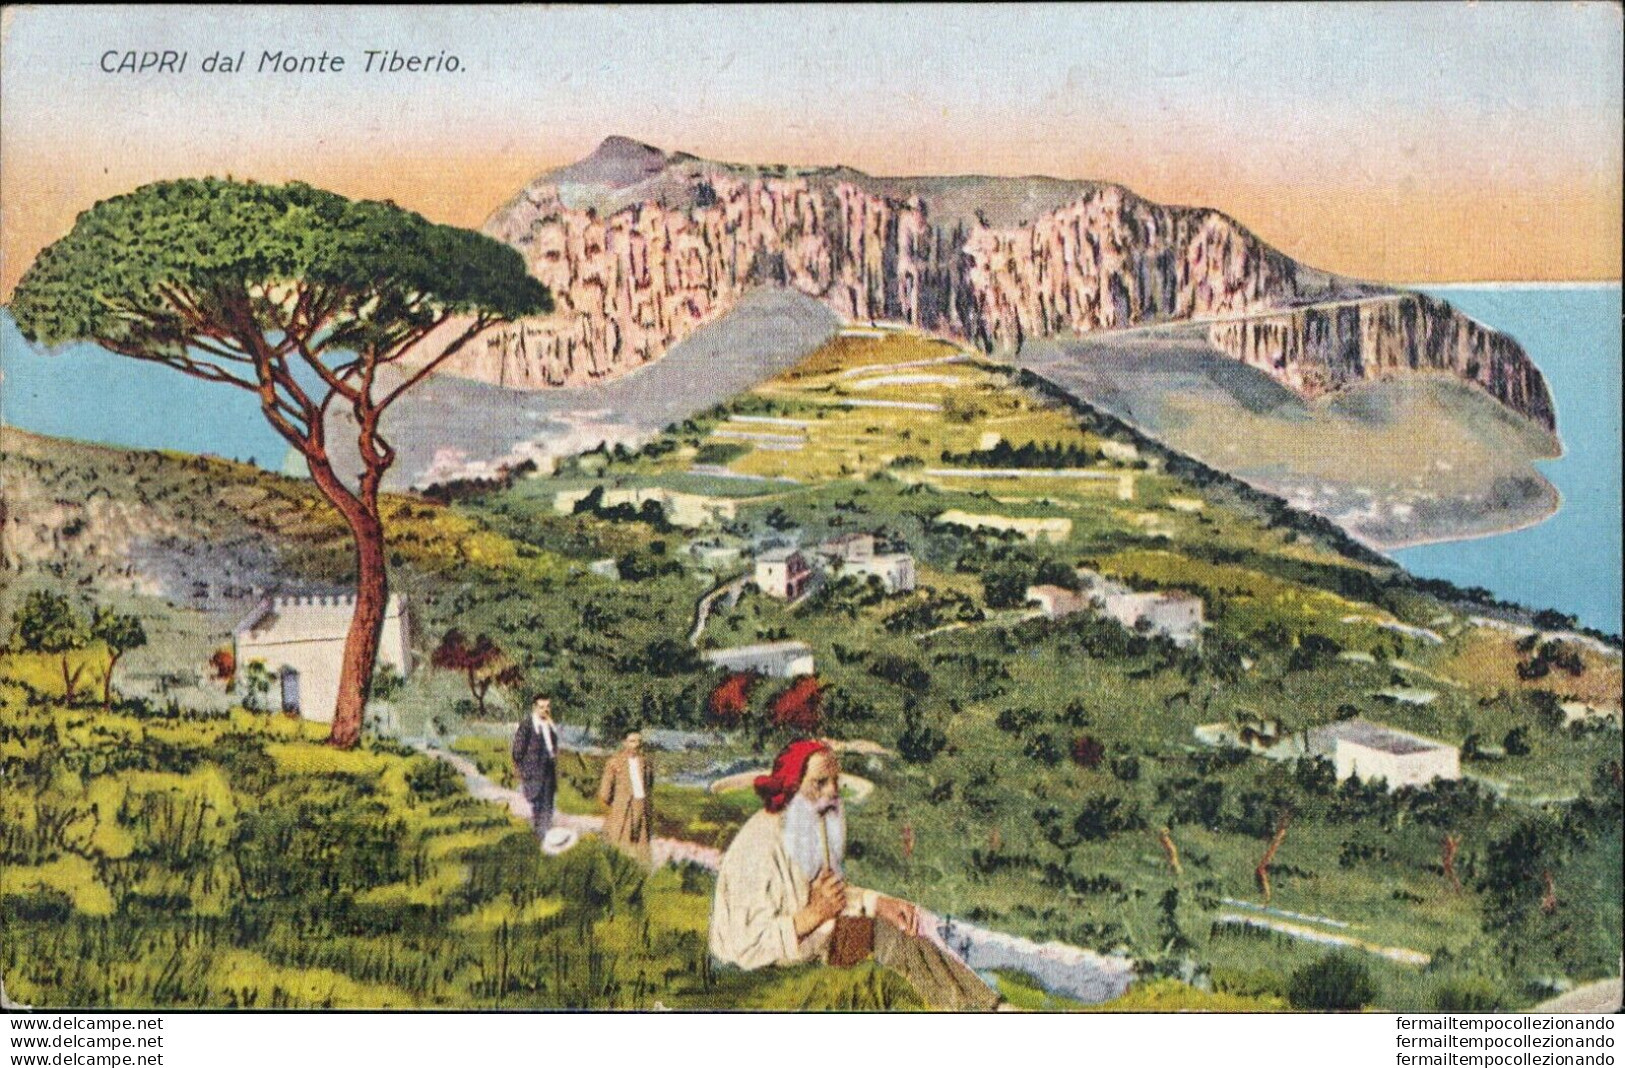 At571 Cartolina Capri Dal Monte Tiberio  Provincia Di Napoli - Napoli (Neapel)